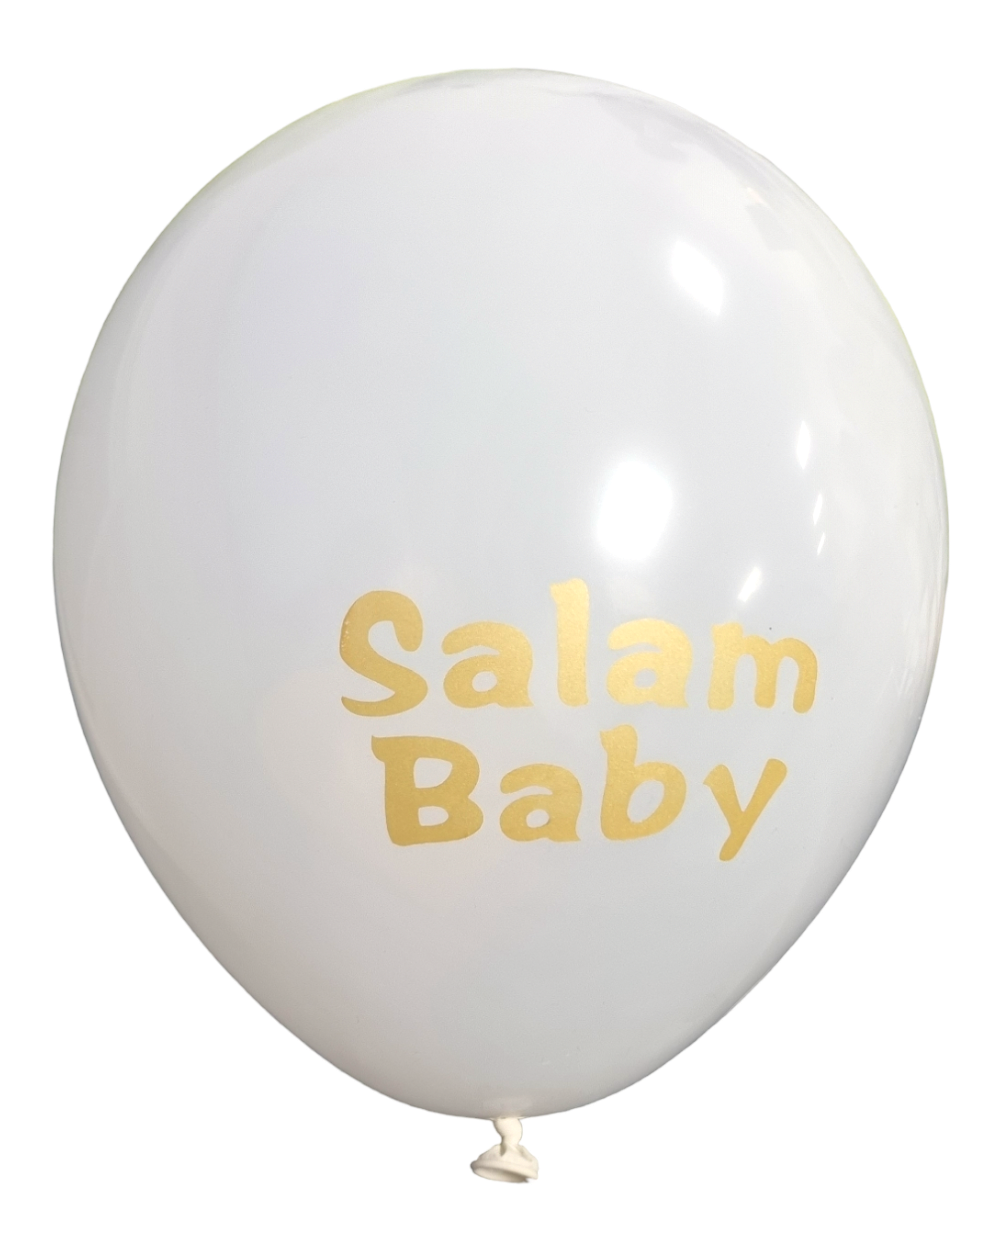 Ballons Salam Baby - Blanc et doré